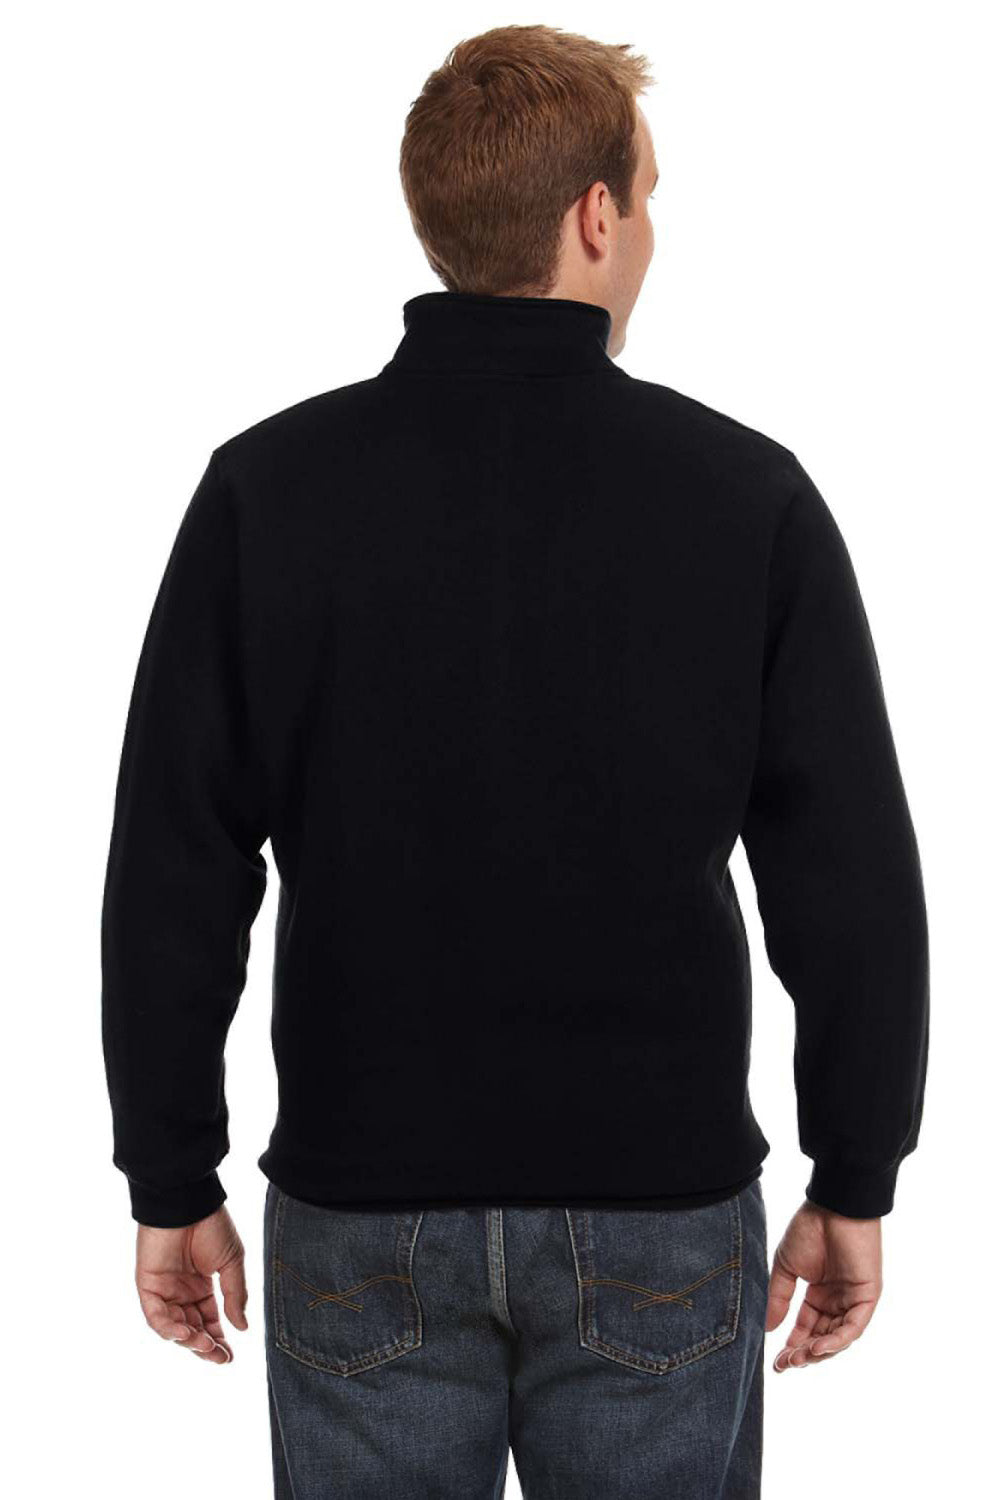 J America JA8634 Mens Fleece 1/4 Zip Sweatshirt Black Back